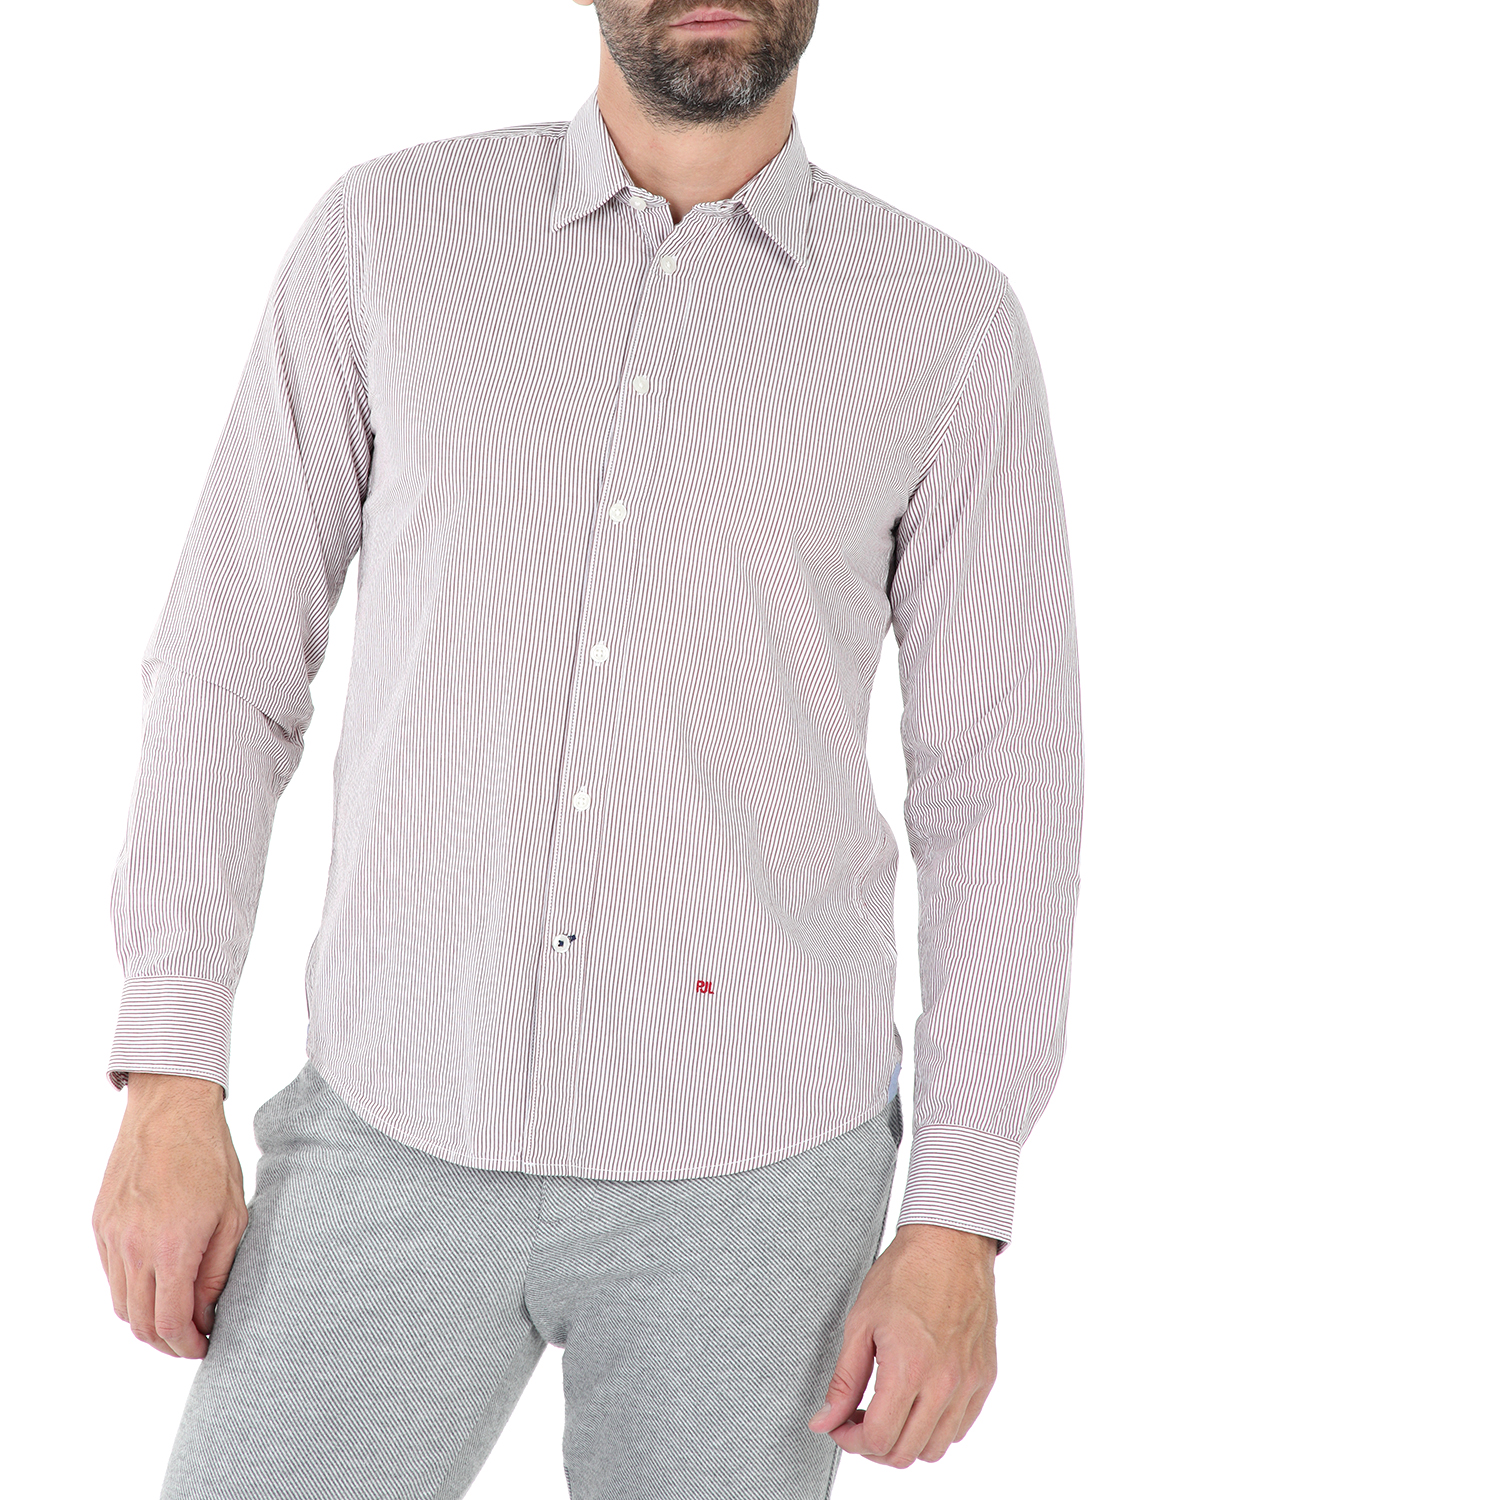 Ανδρικά/Ρούχα/Πουκάμισα/Μακρυμάνικα PEPE JEANS - Ανδρικό μακρυμάνικο πουκάμισο PEPE JEANS HYDEN ριγέ